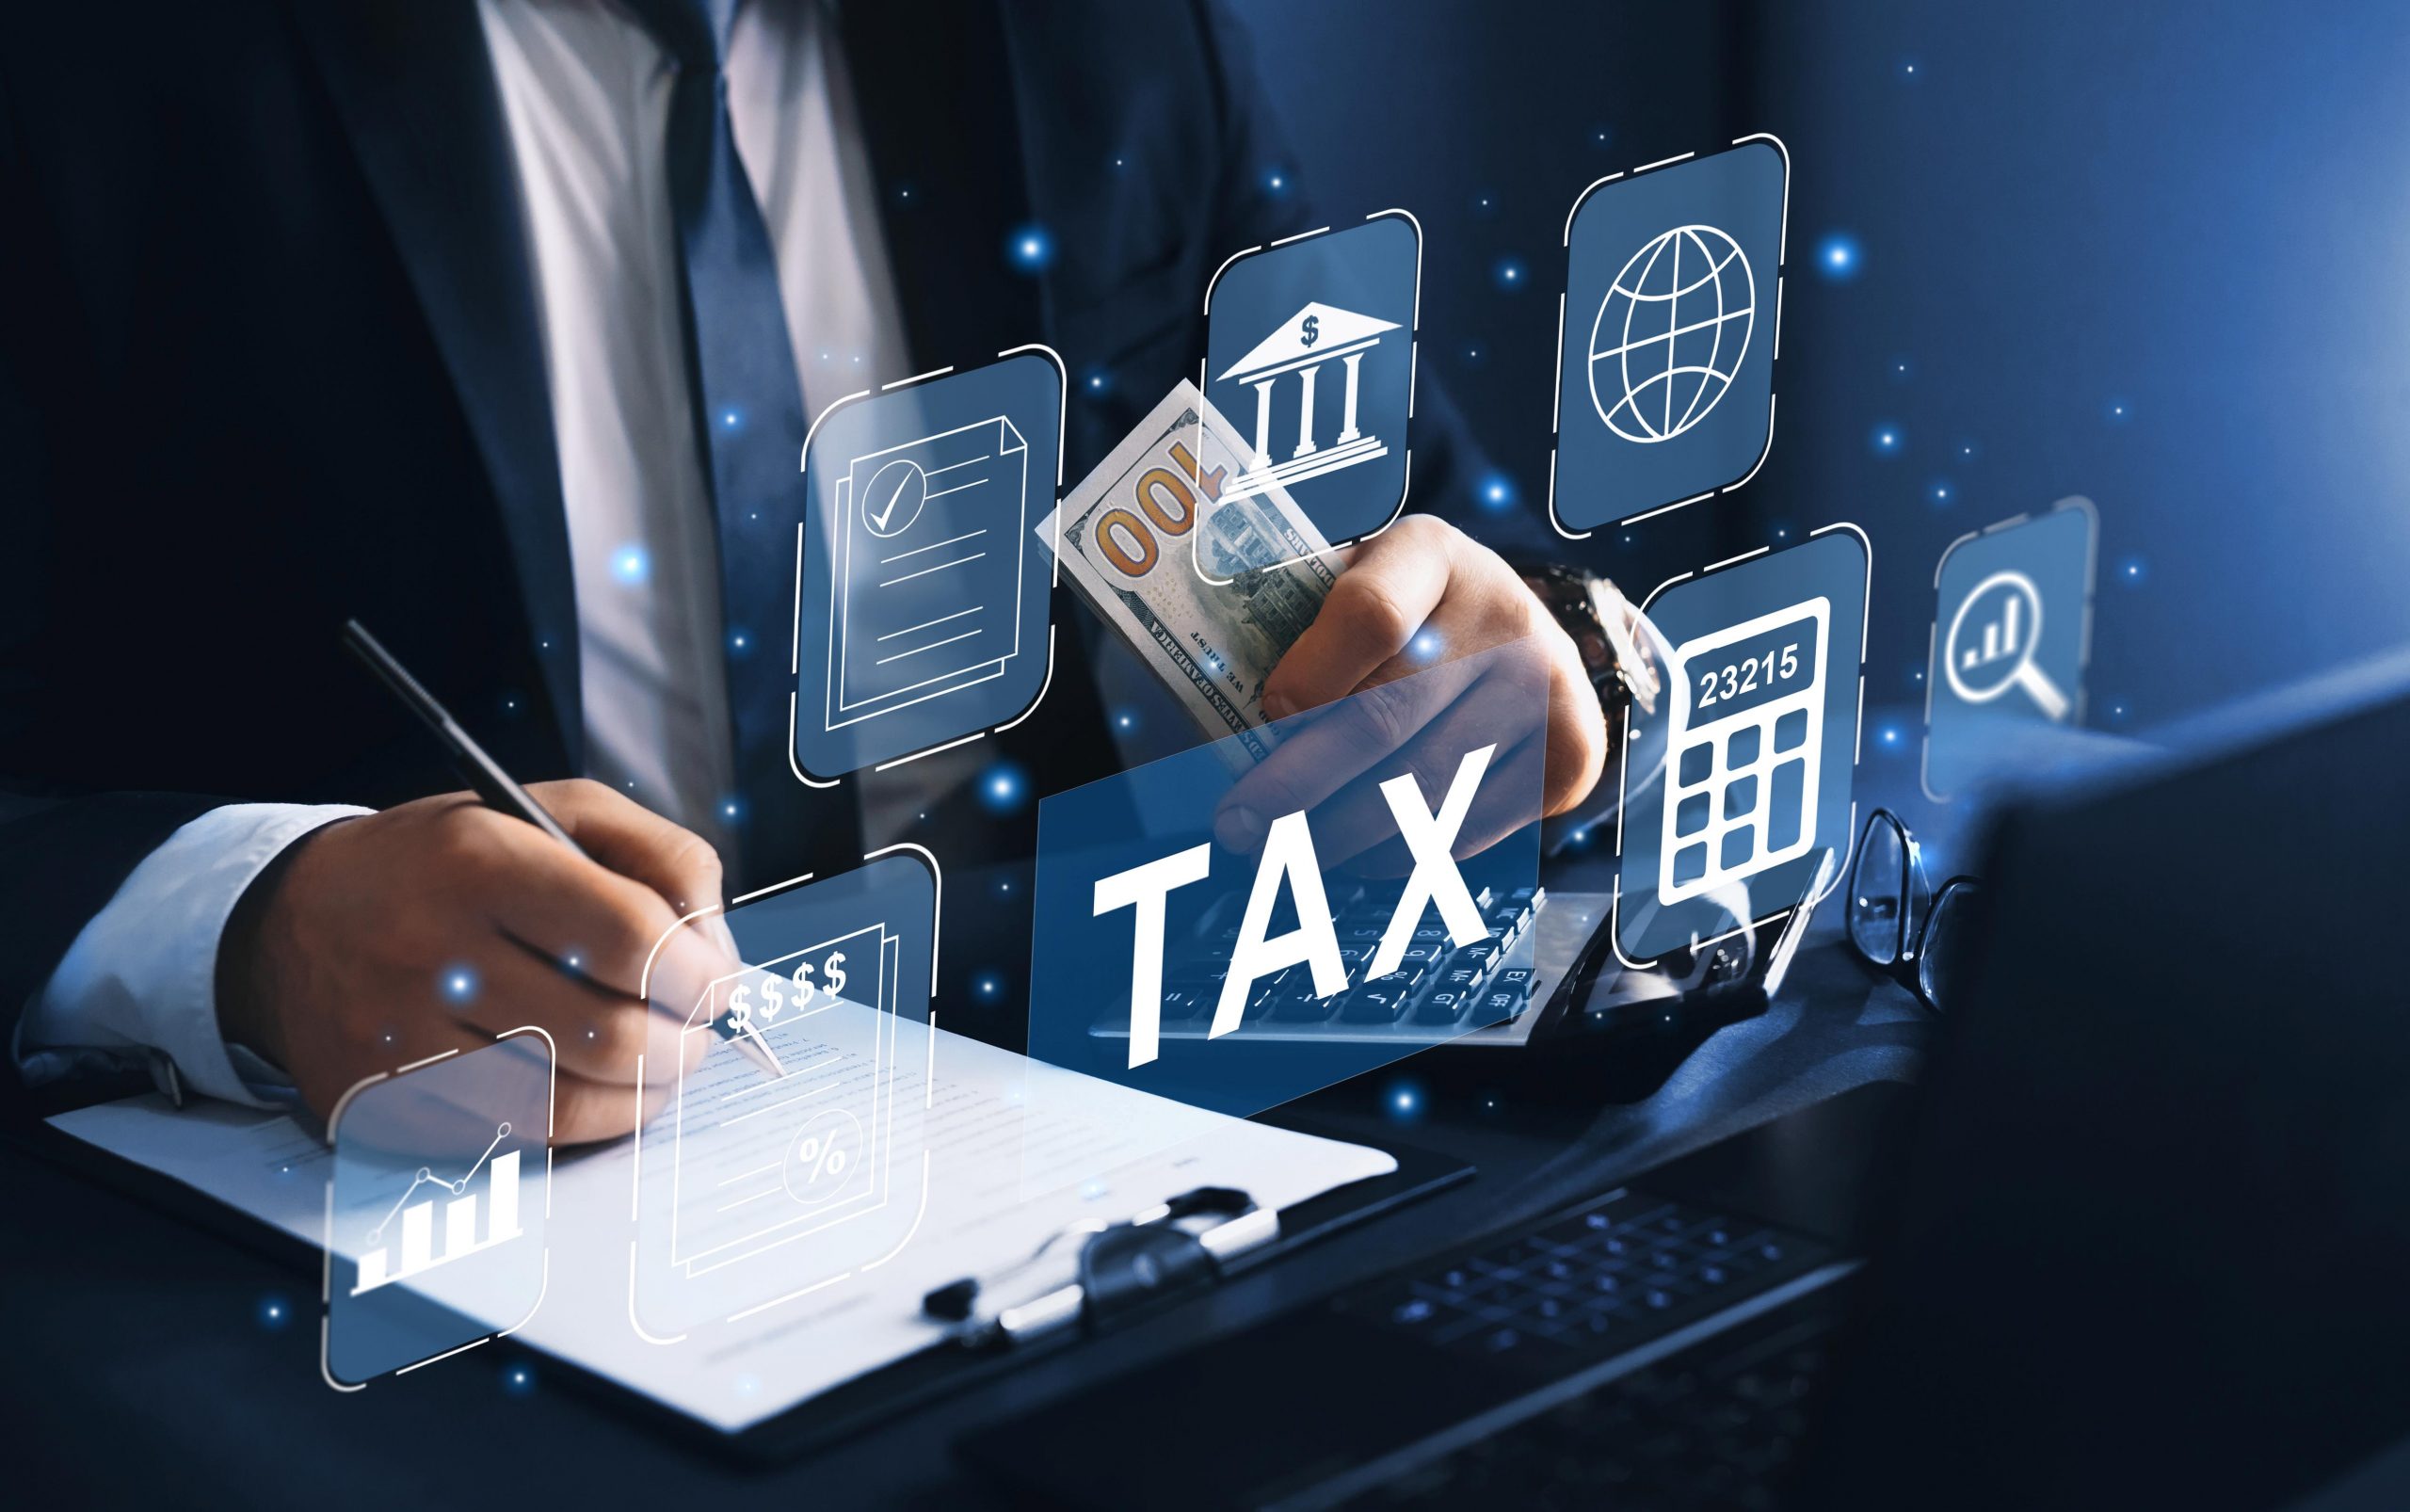 Vi phạm về thuế có thể dẫn đến rủi ro pháp lý và tài chính nghiêm trọng, ảnh hưởng đến uy tín và hoạt động kinh doanh.